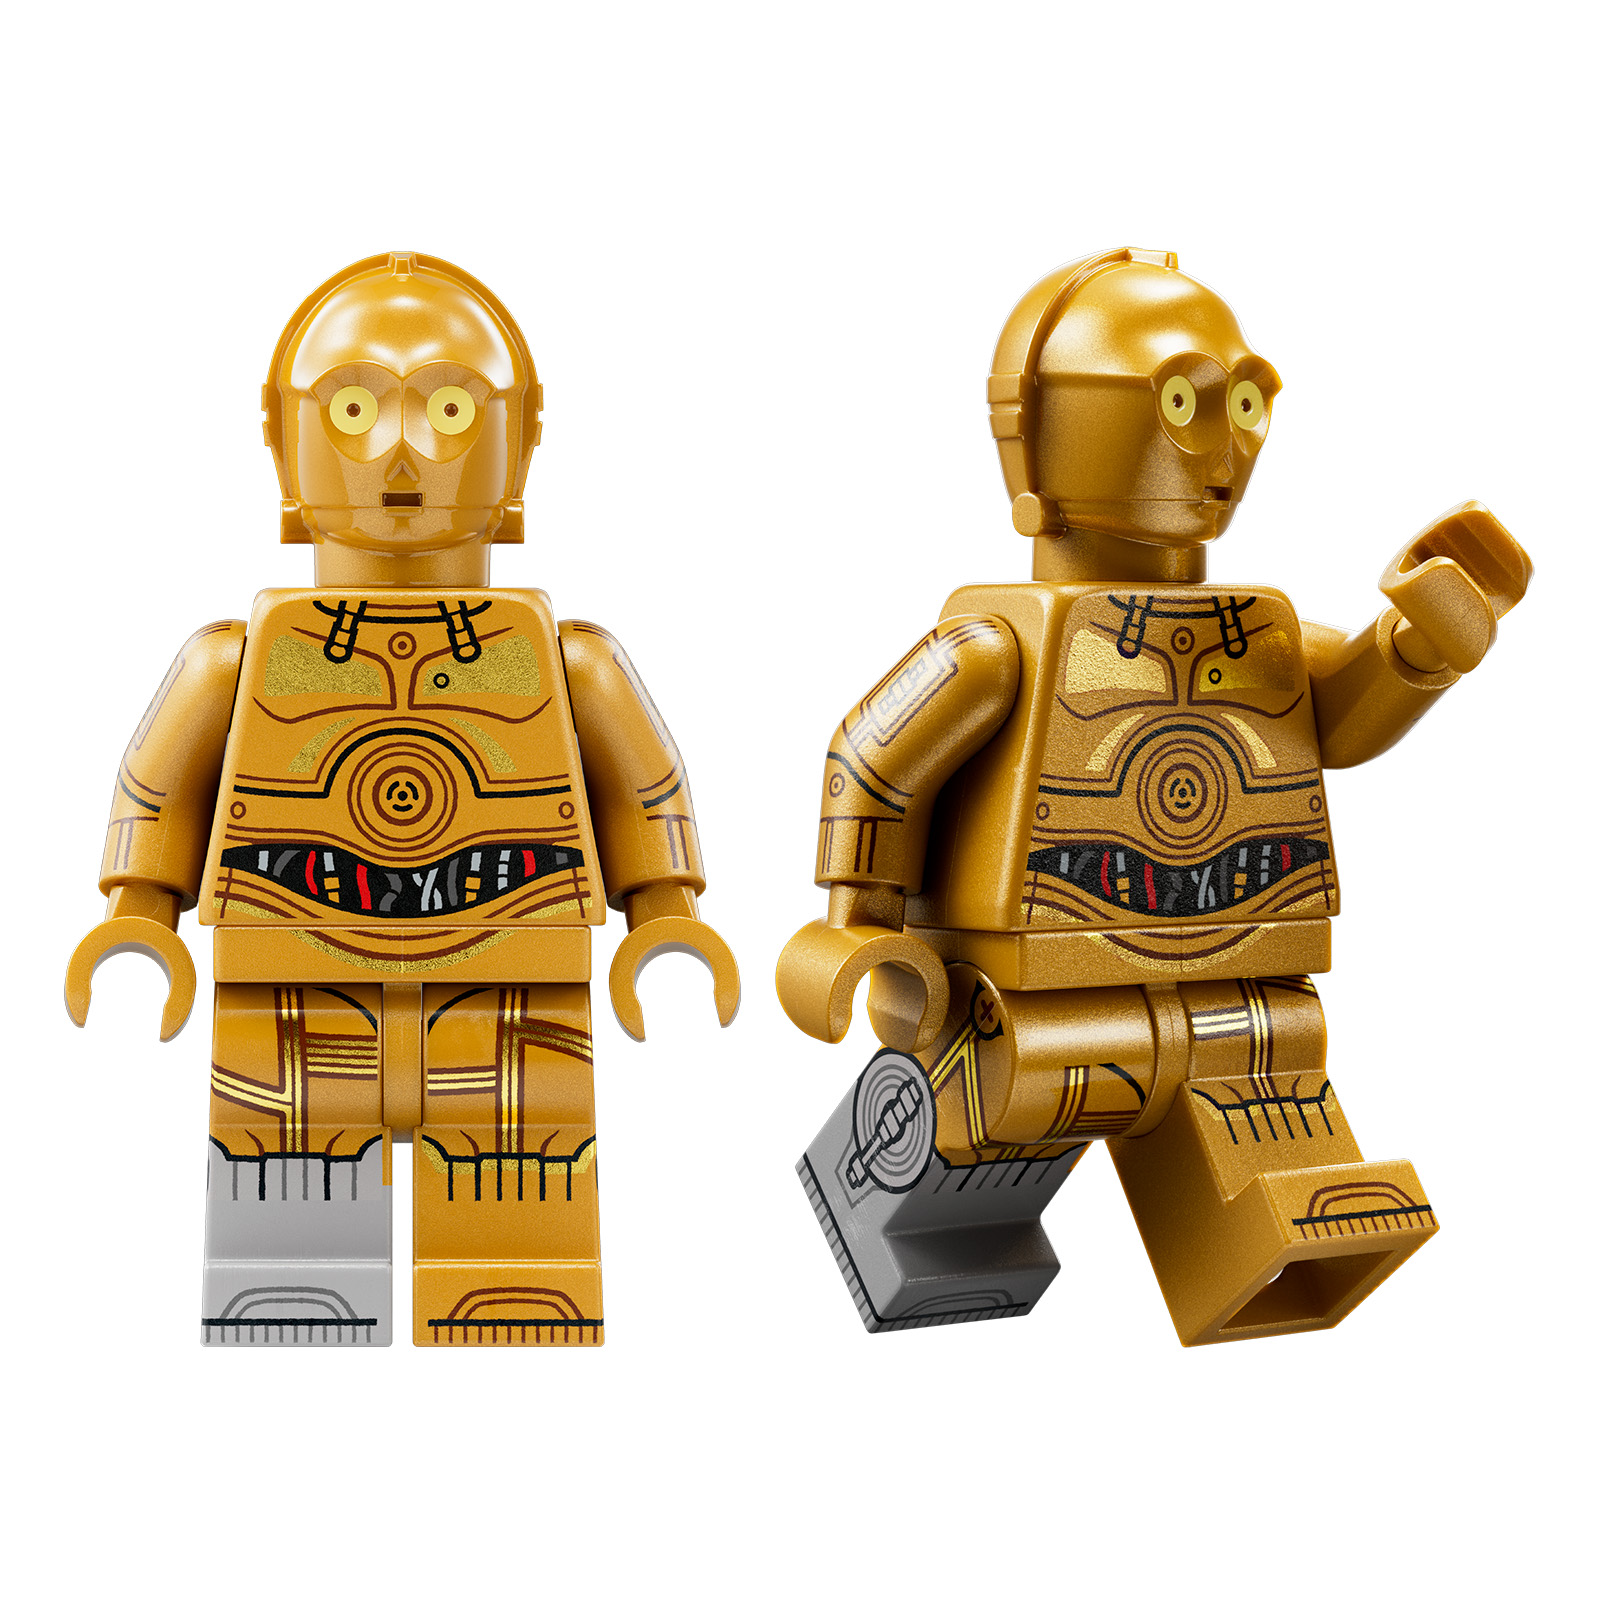 Lego Star Wars Figur C-3PO 1 neue Version 